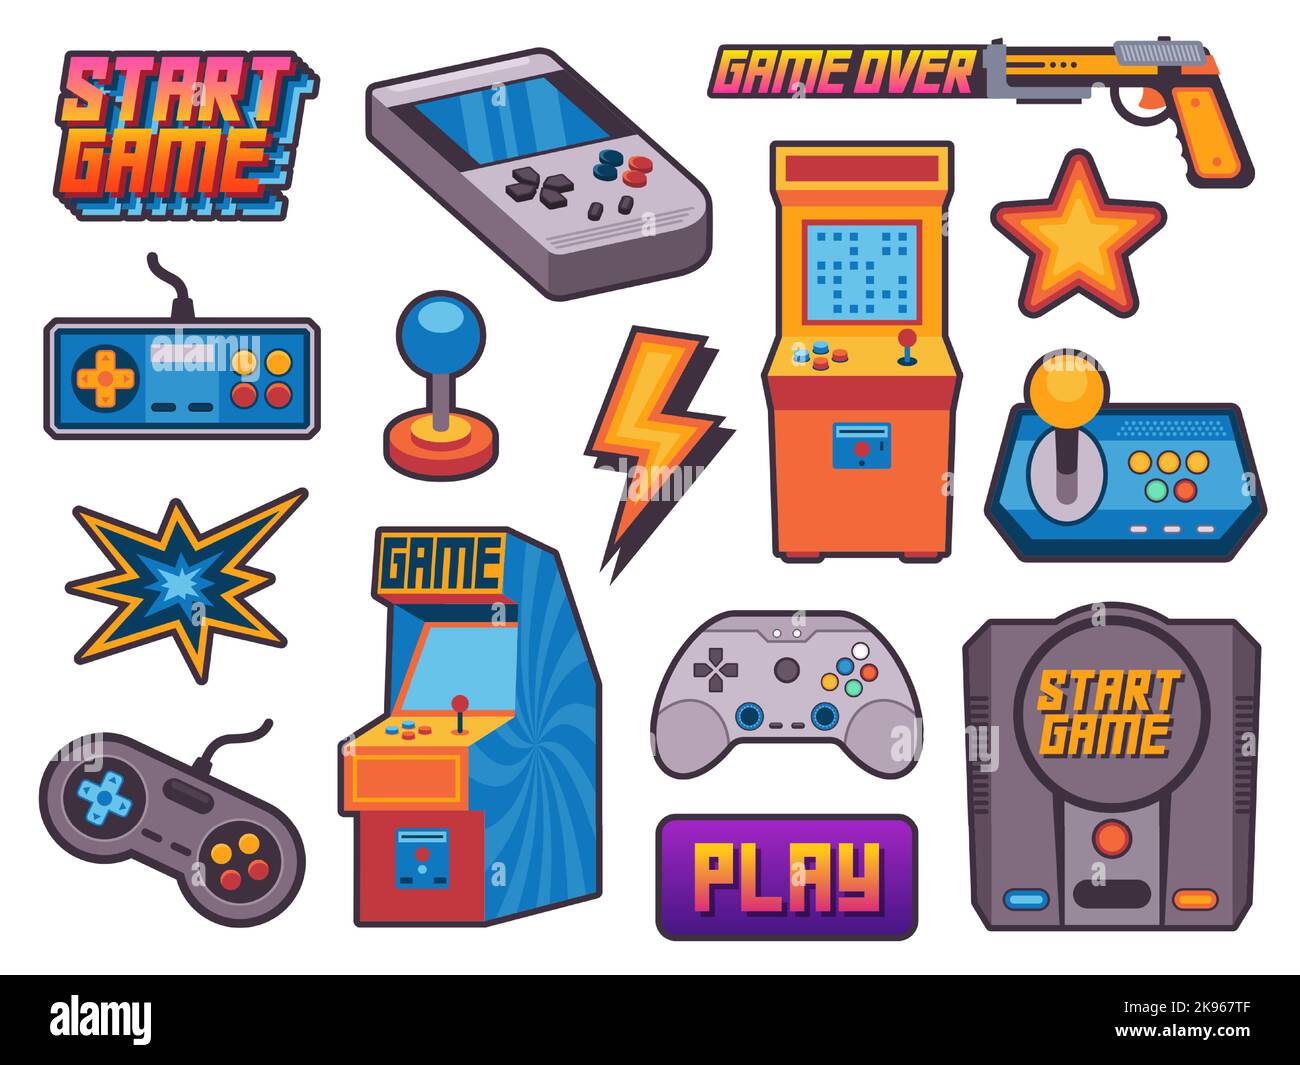 Aufkleber für Videospiele. Vintage Gamer Assets mit Pixel 8 Bit-Icons, Cartoon Nostalgie Hipster Gamepad Joystick Arkaden flachen Stil. Vektorgrafik Stock Vektor